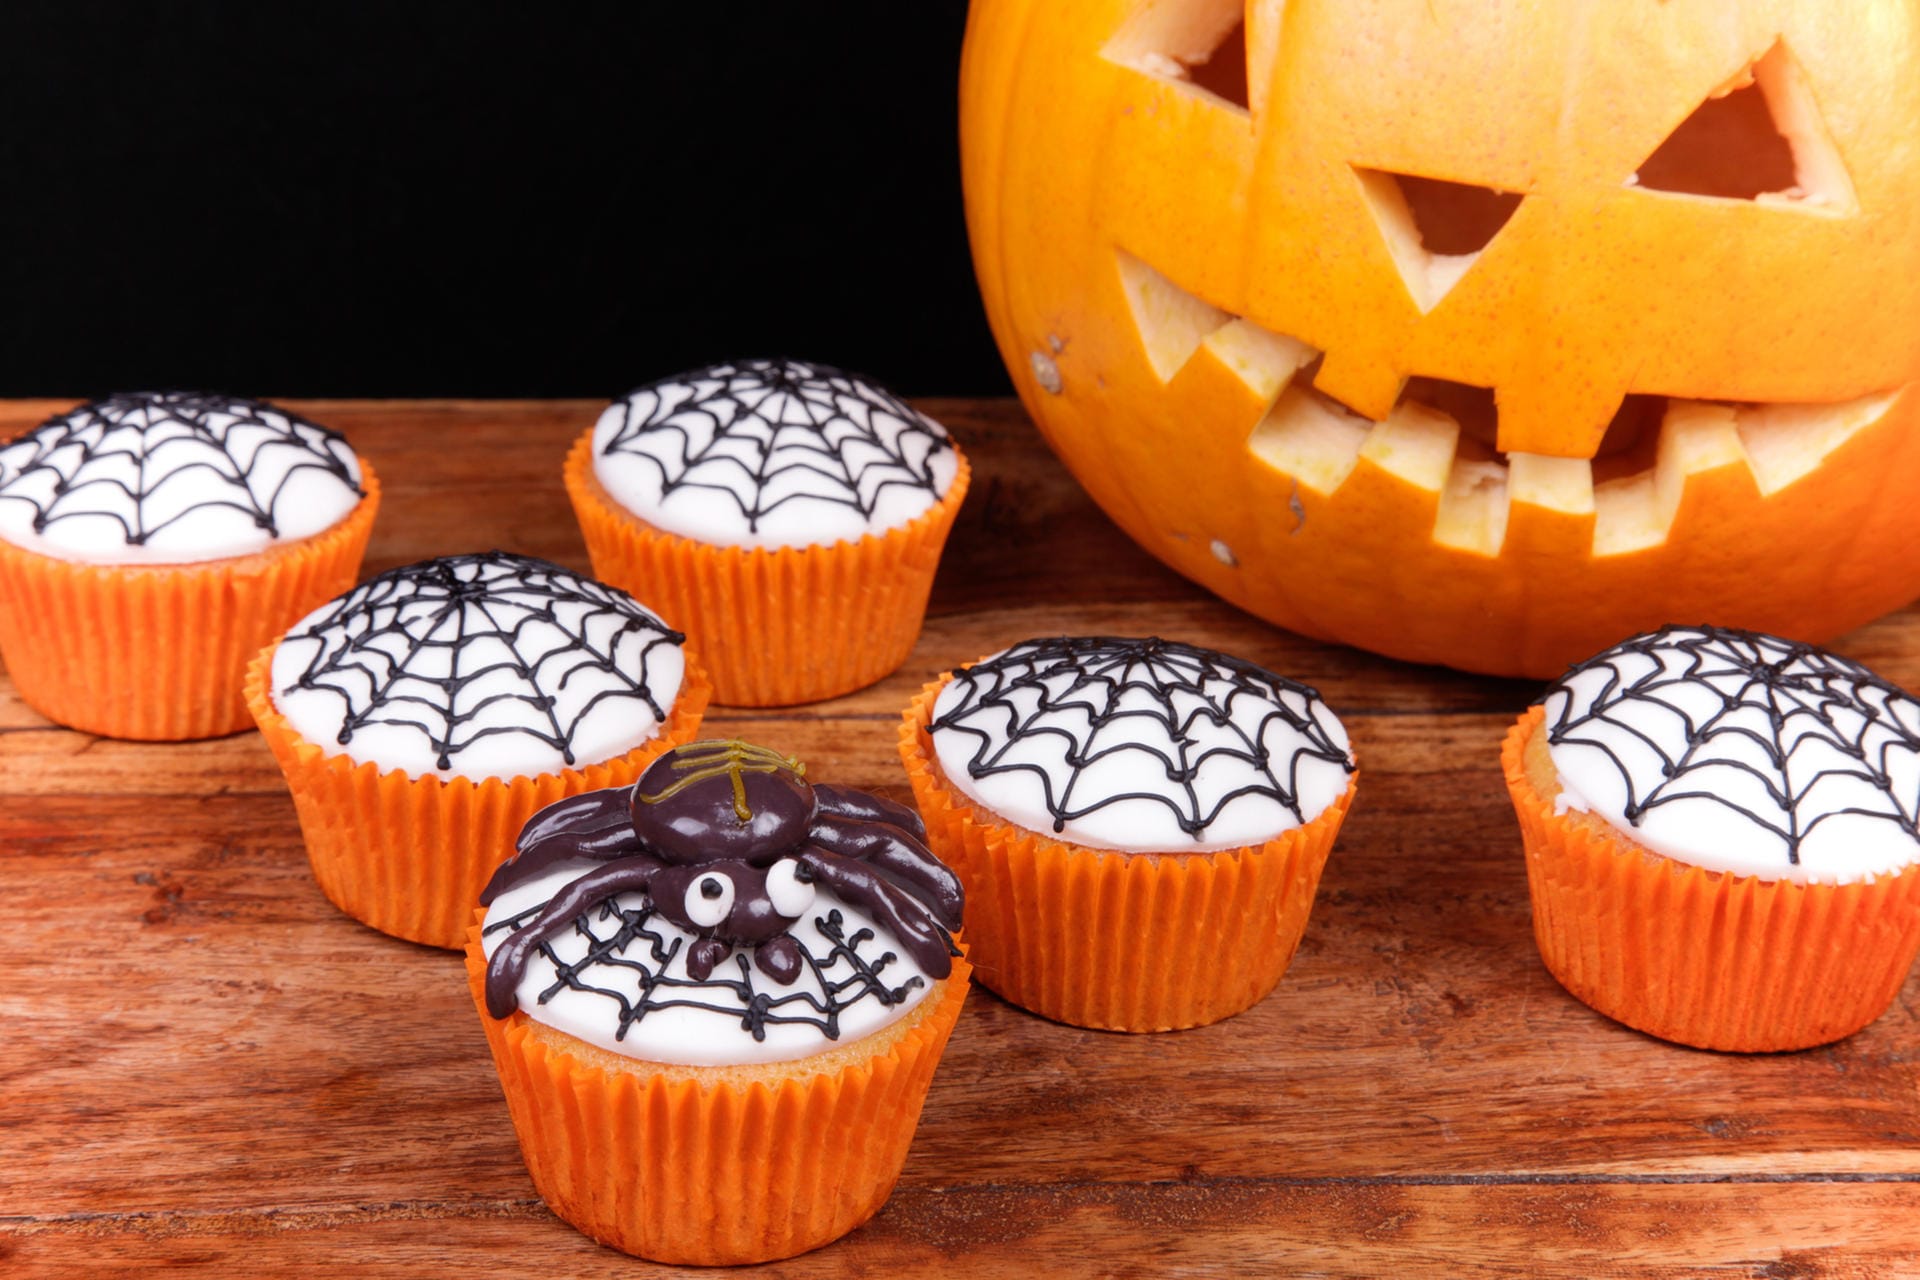 Um Muffins einen Halloween-Look zu verleihen, eignen sich Toppings. Malen Sie einfach Spinnennetze auf die Muffins. Auch Mumien-Muffins sind leicht zu dekorieren. Zur Anleitung geht es hier entlang.